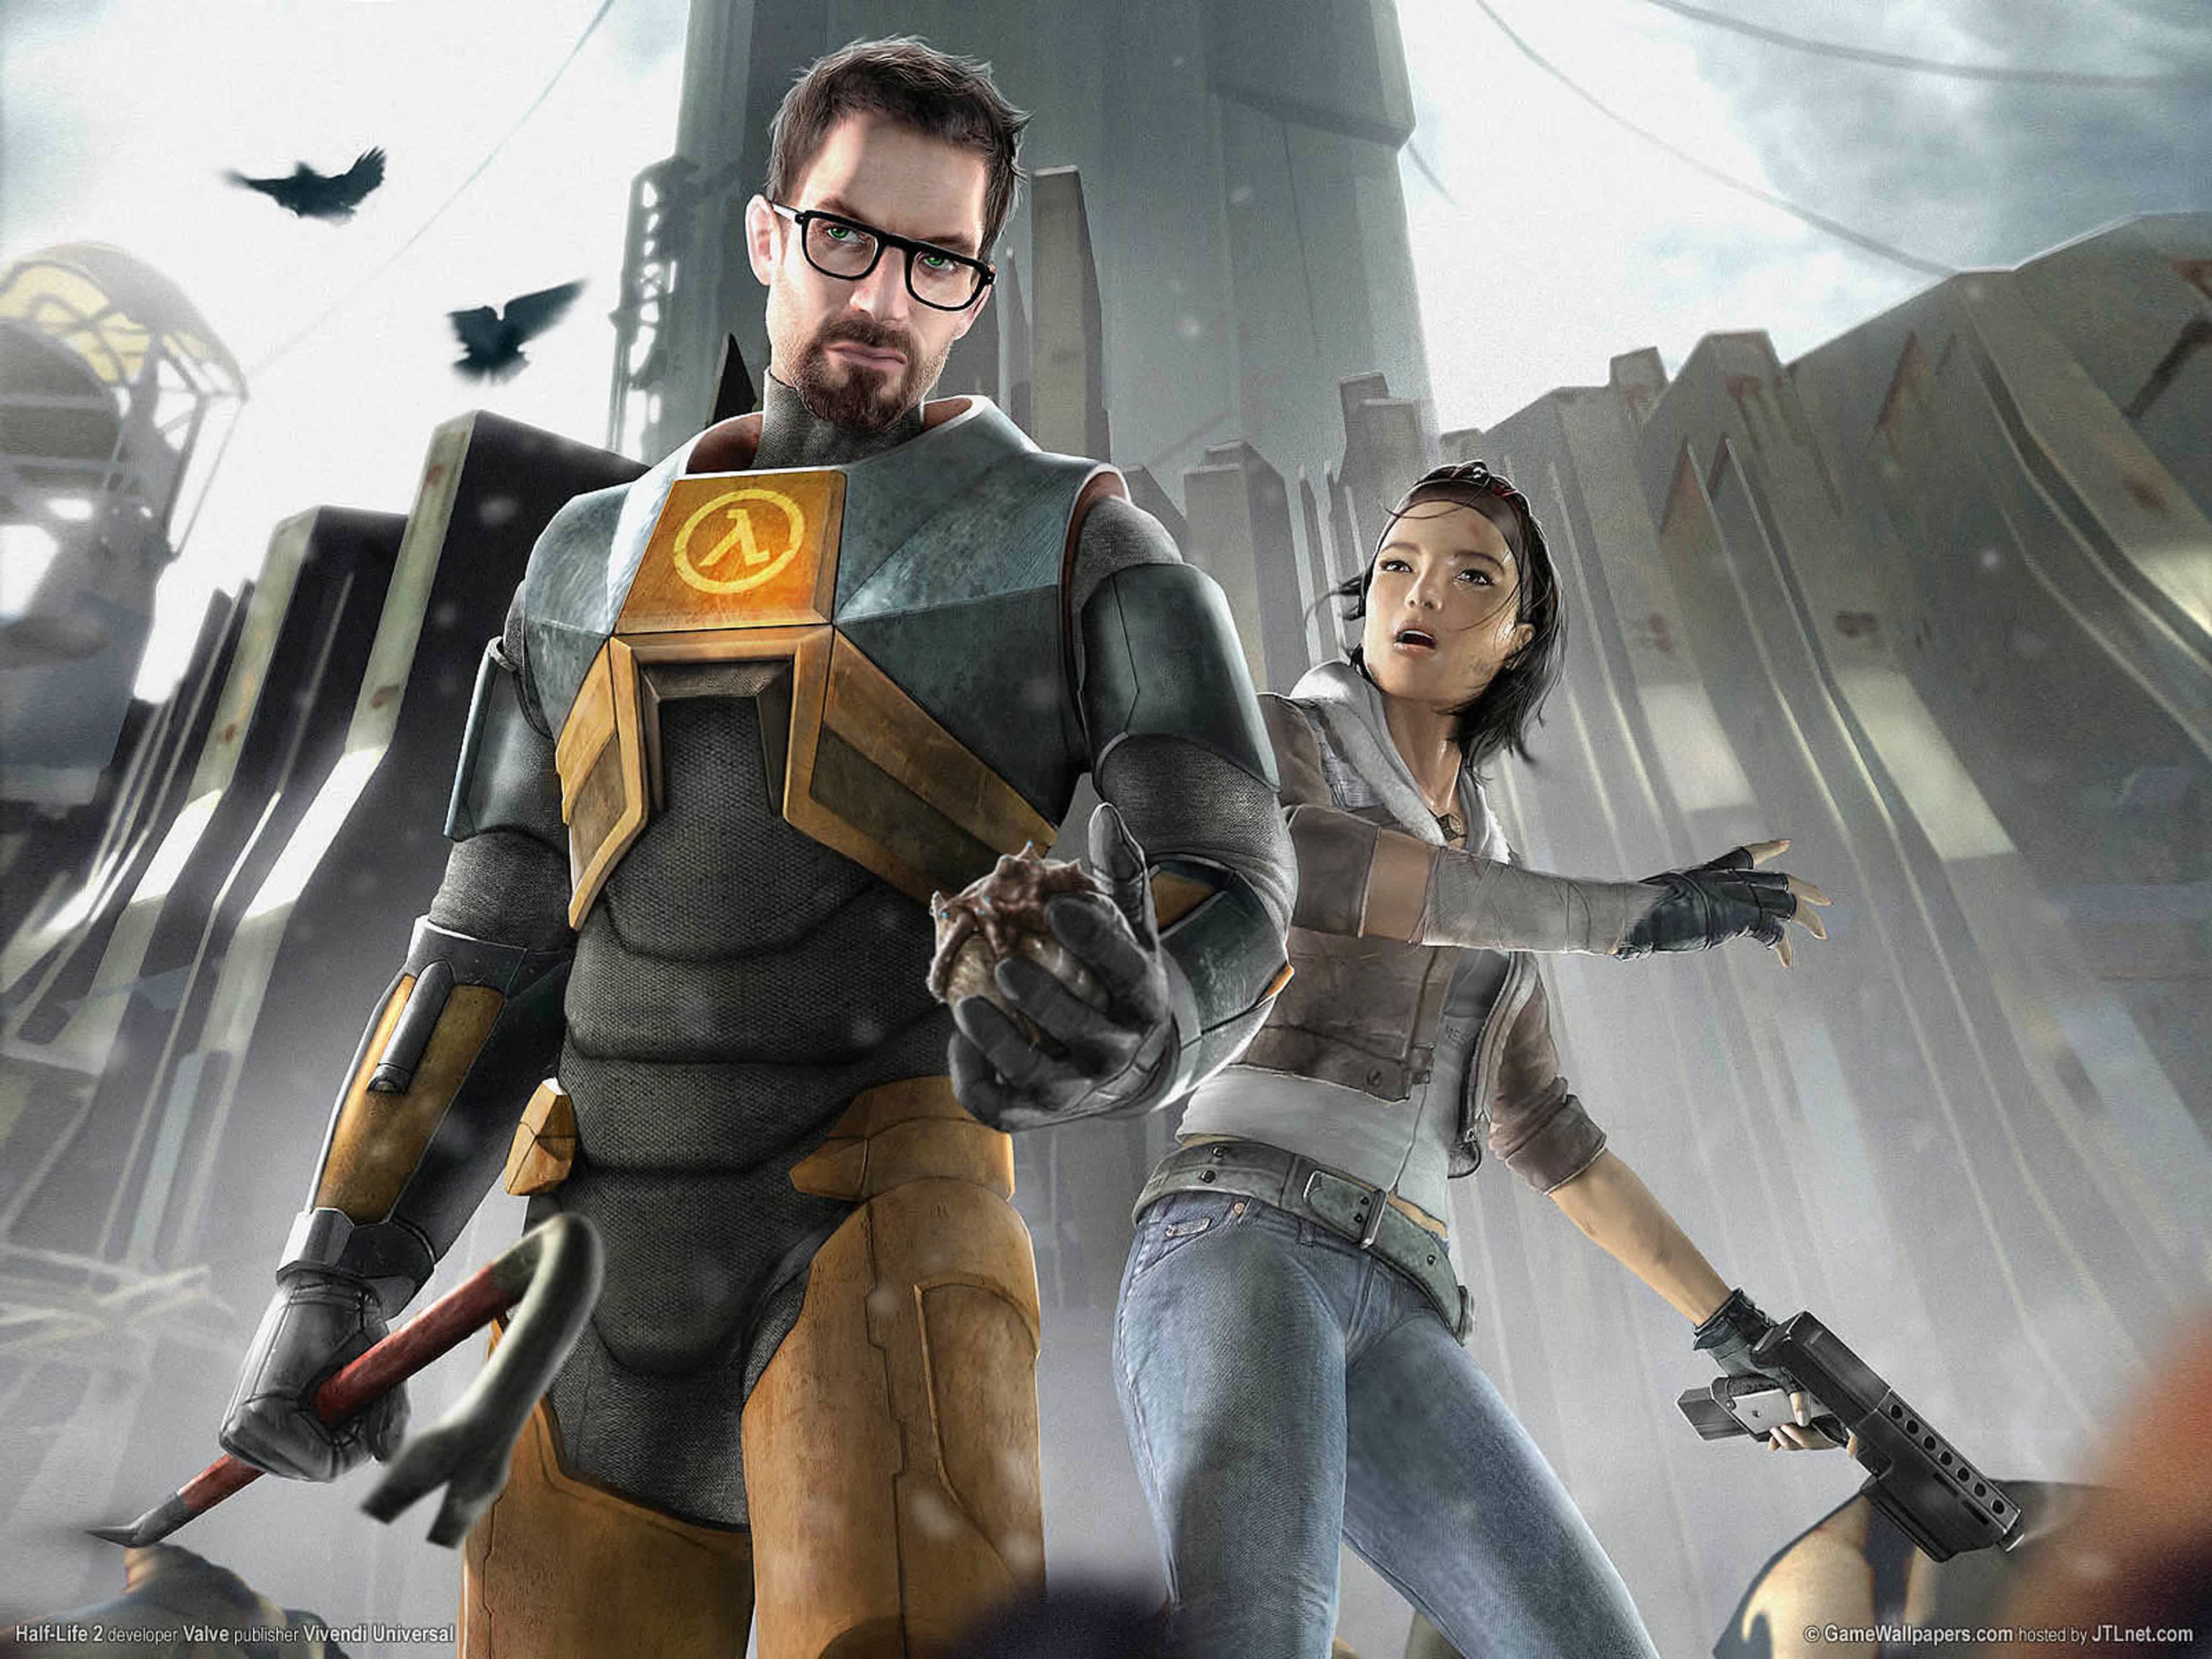 Half-Life 3 söylentileri yeniden ortaya çıktı